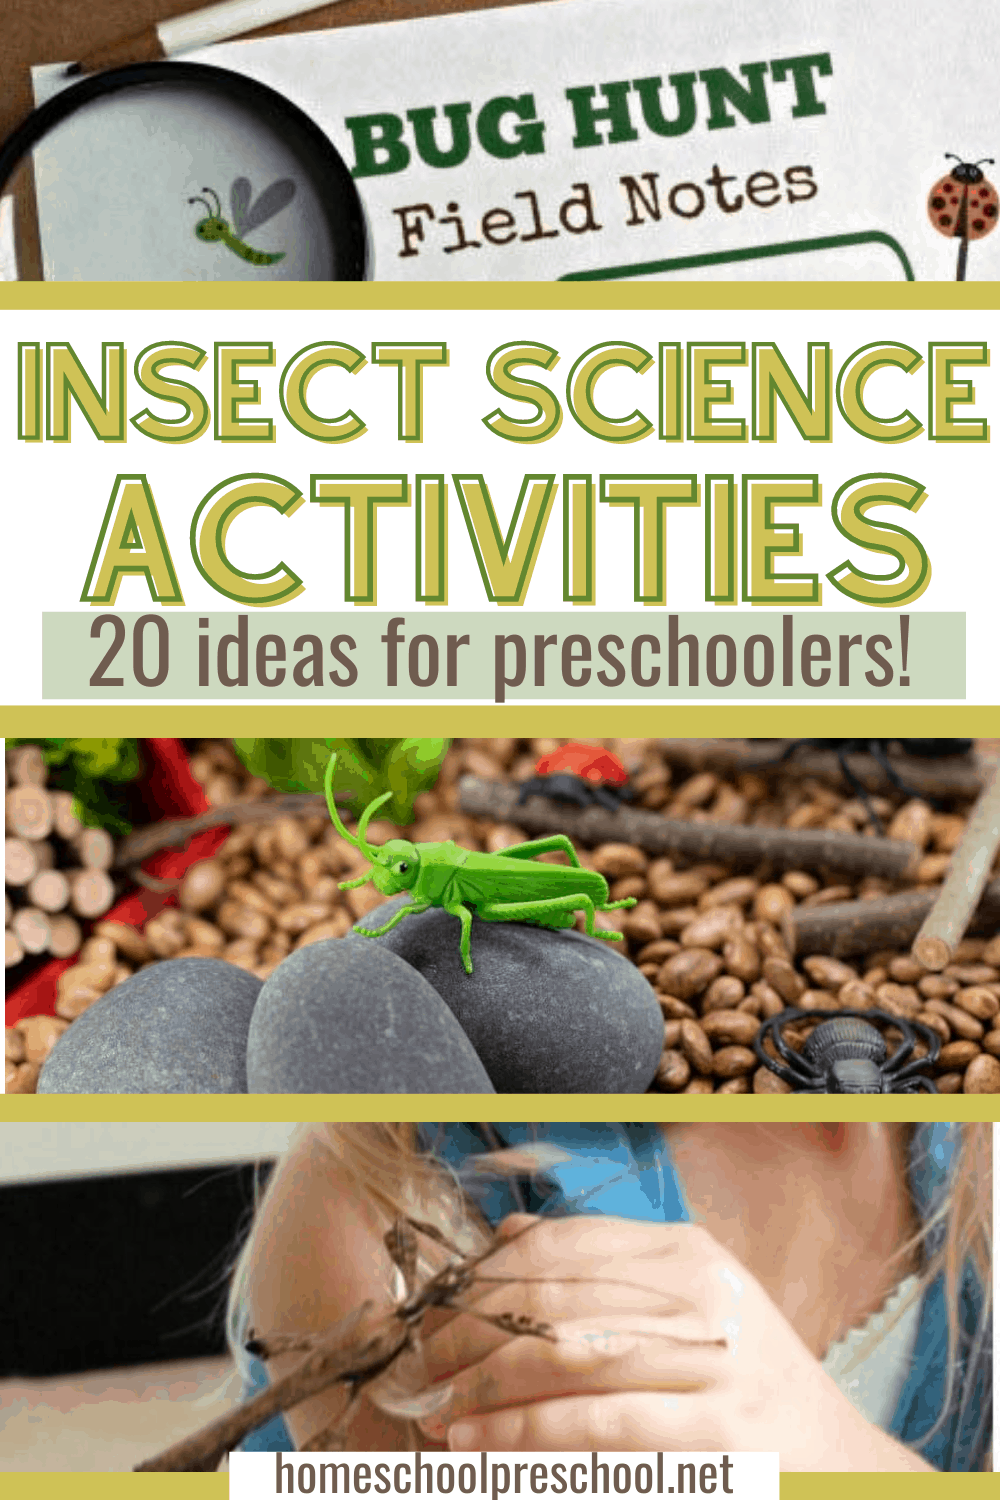 Insect Science Activities for Preschoolers